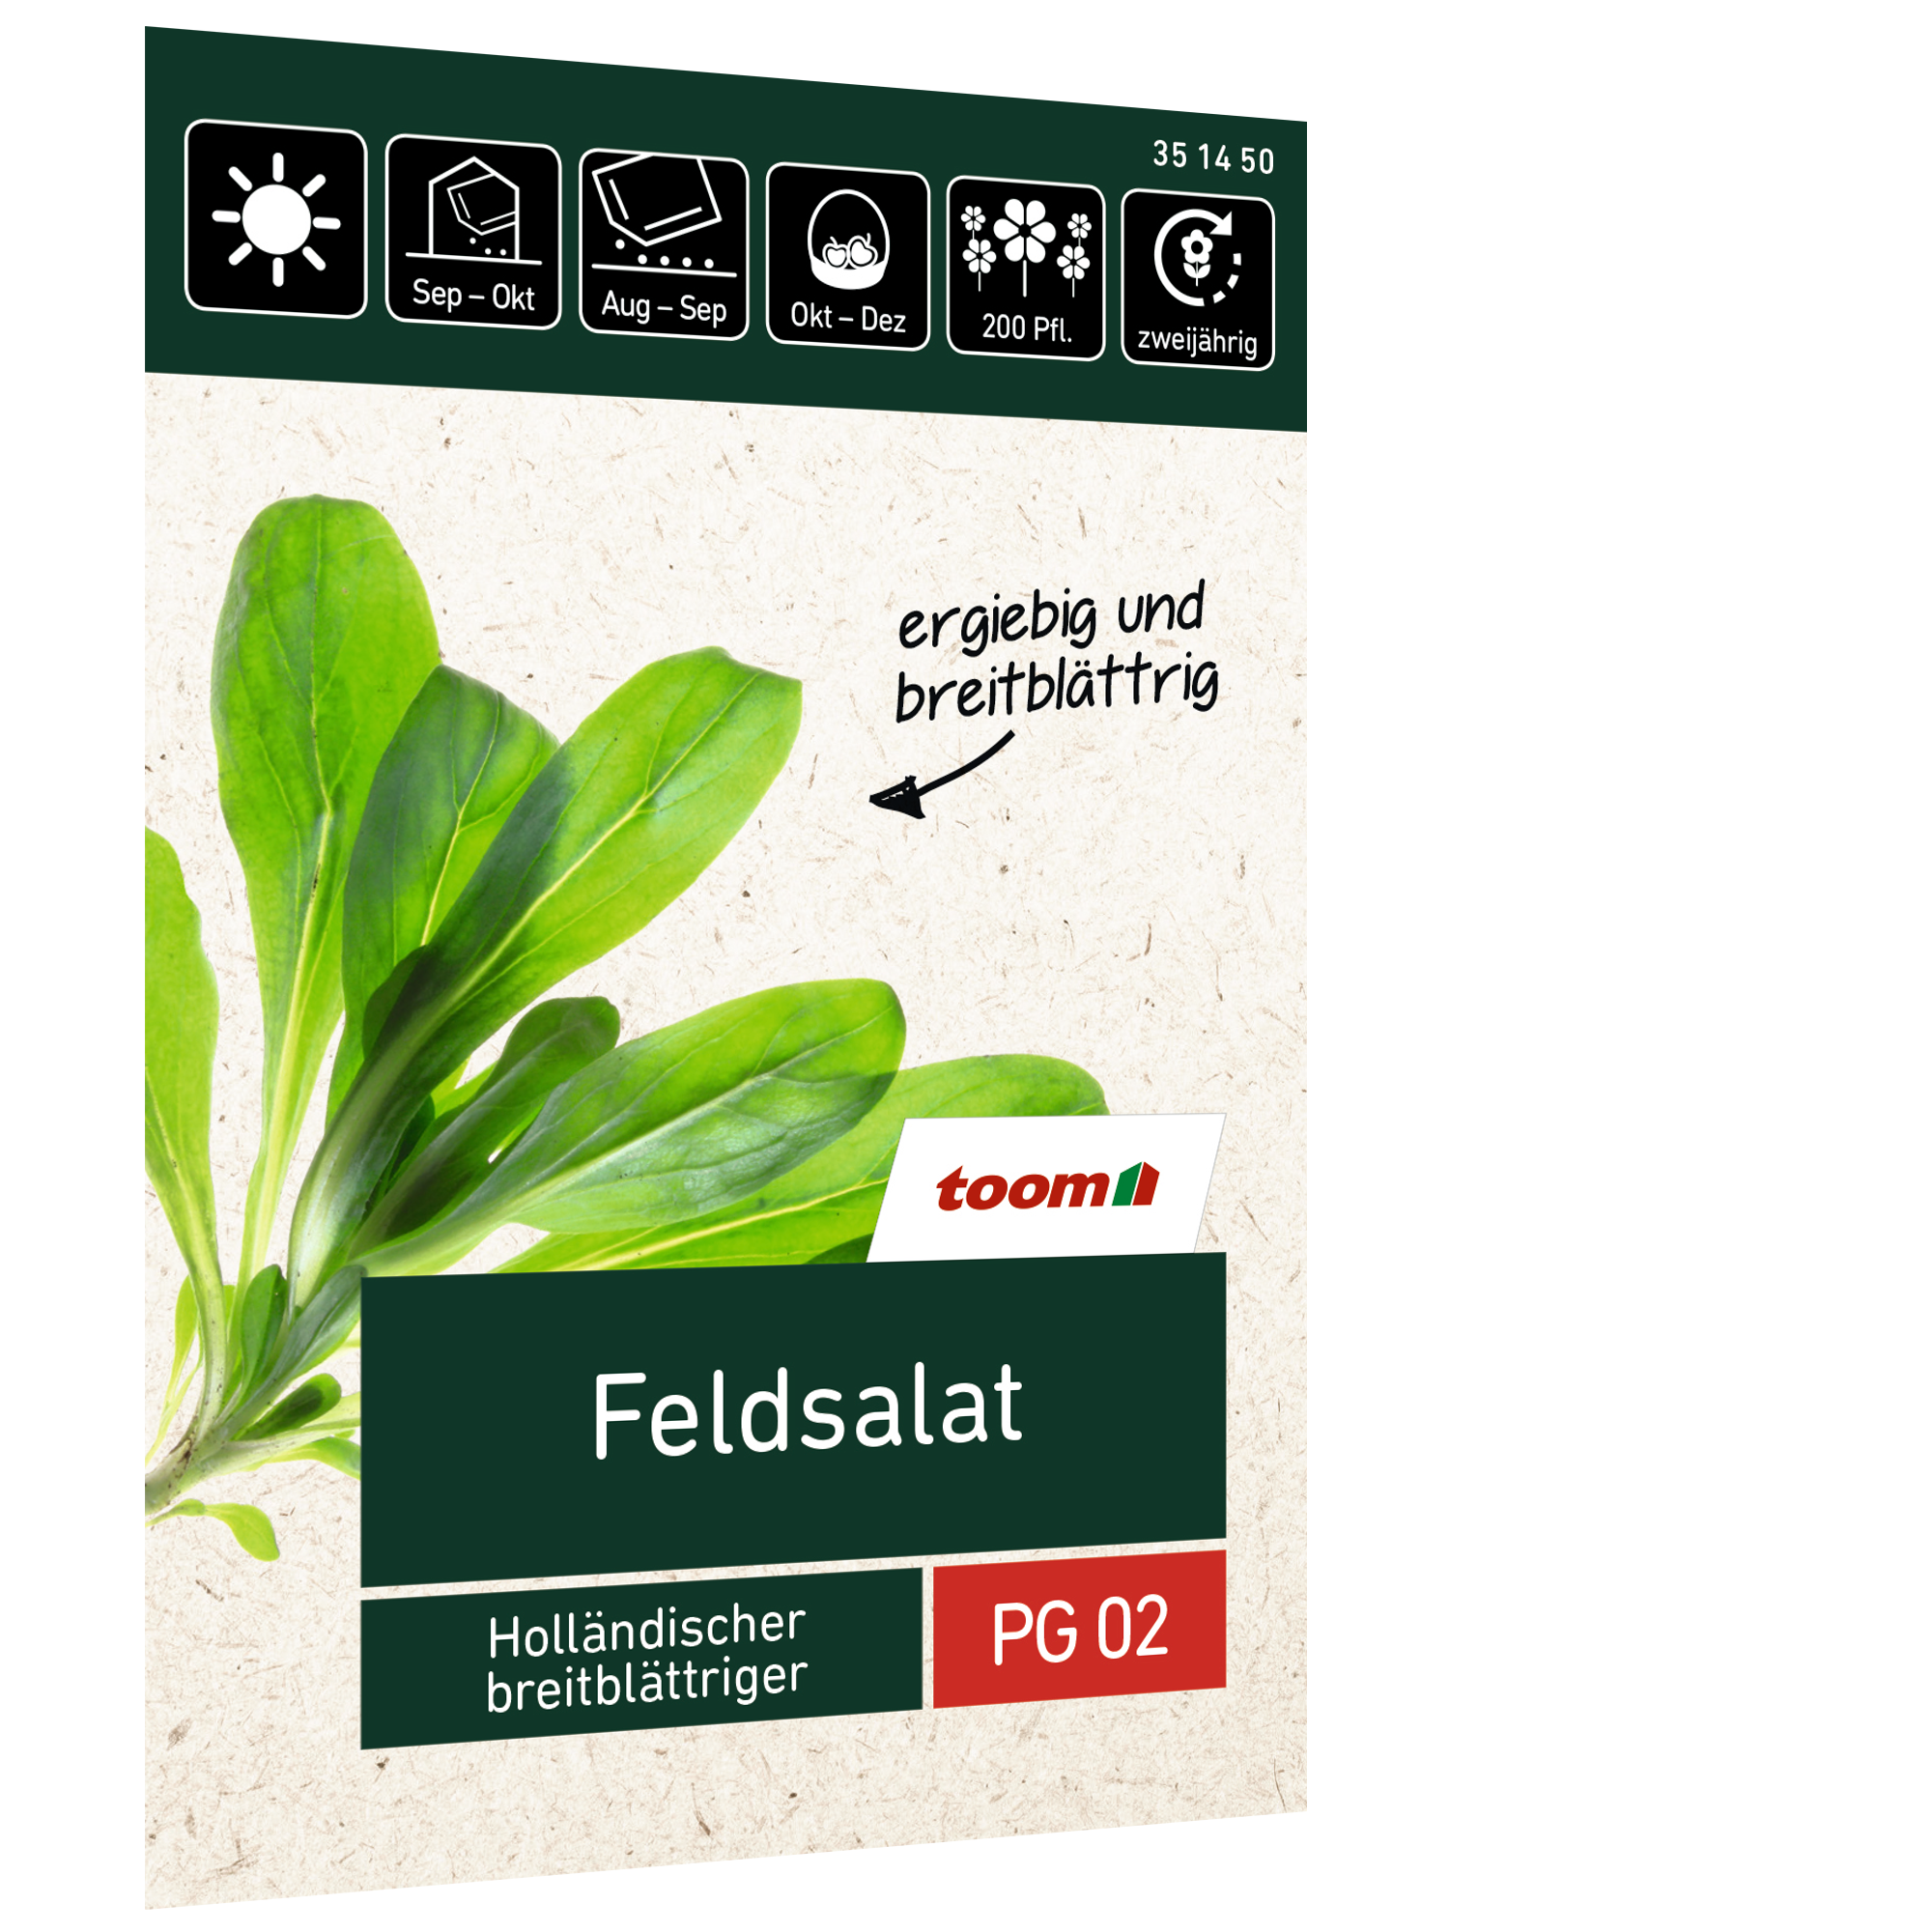 Feldsalat 'Holländischer breitblättriger' + product picture